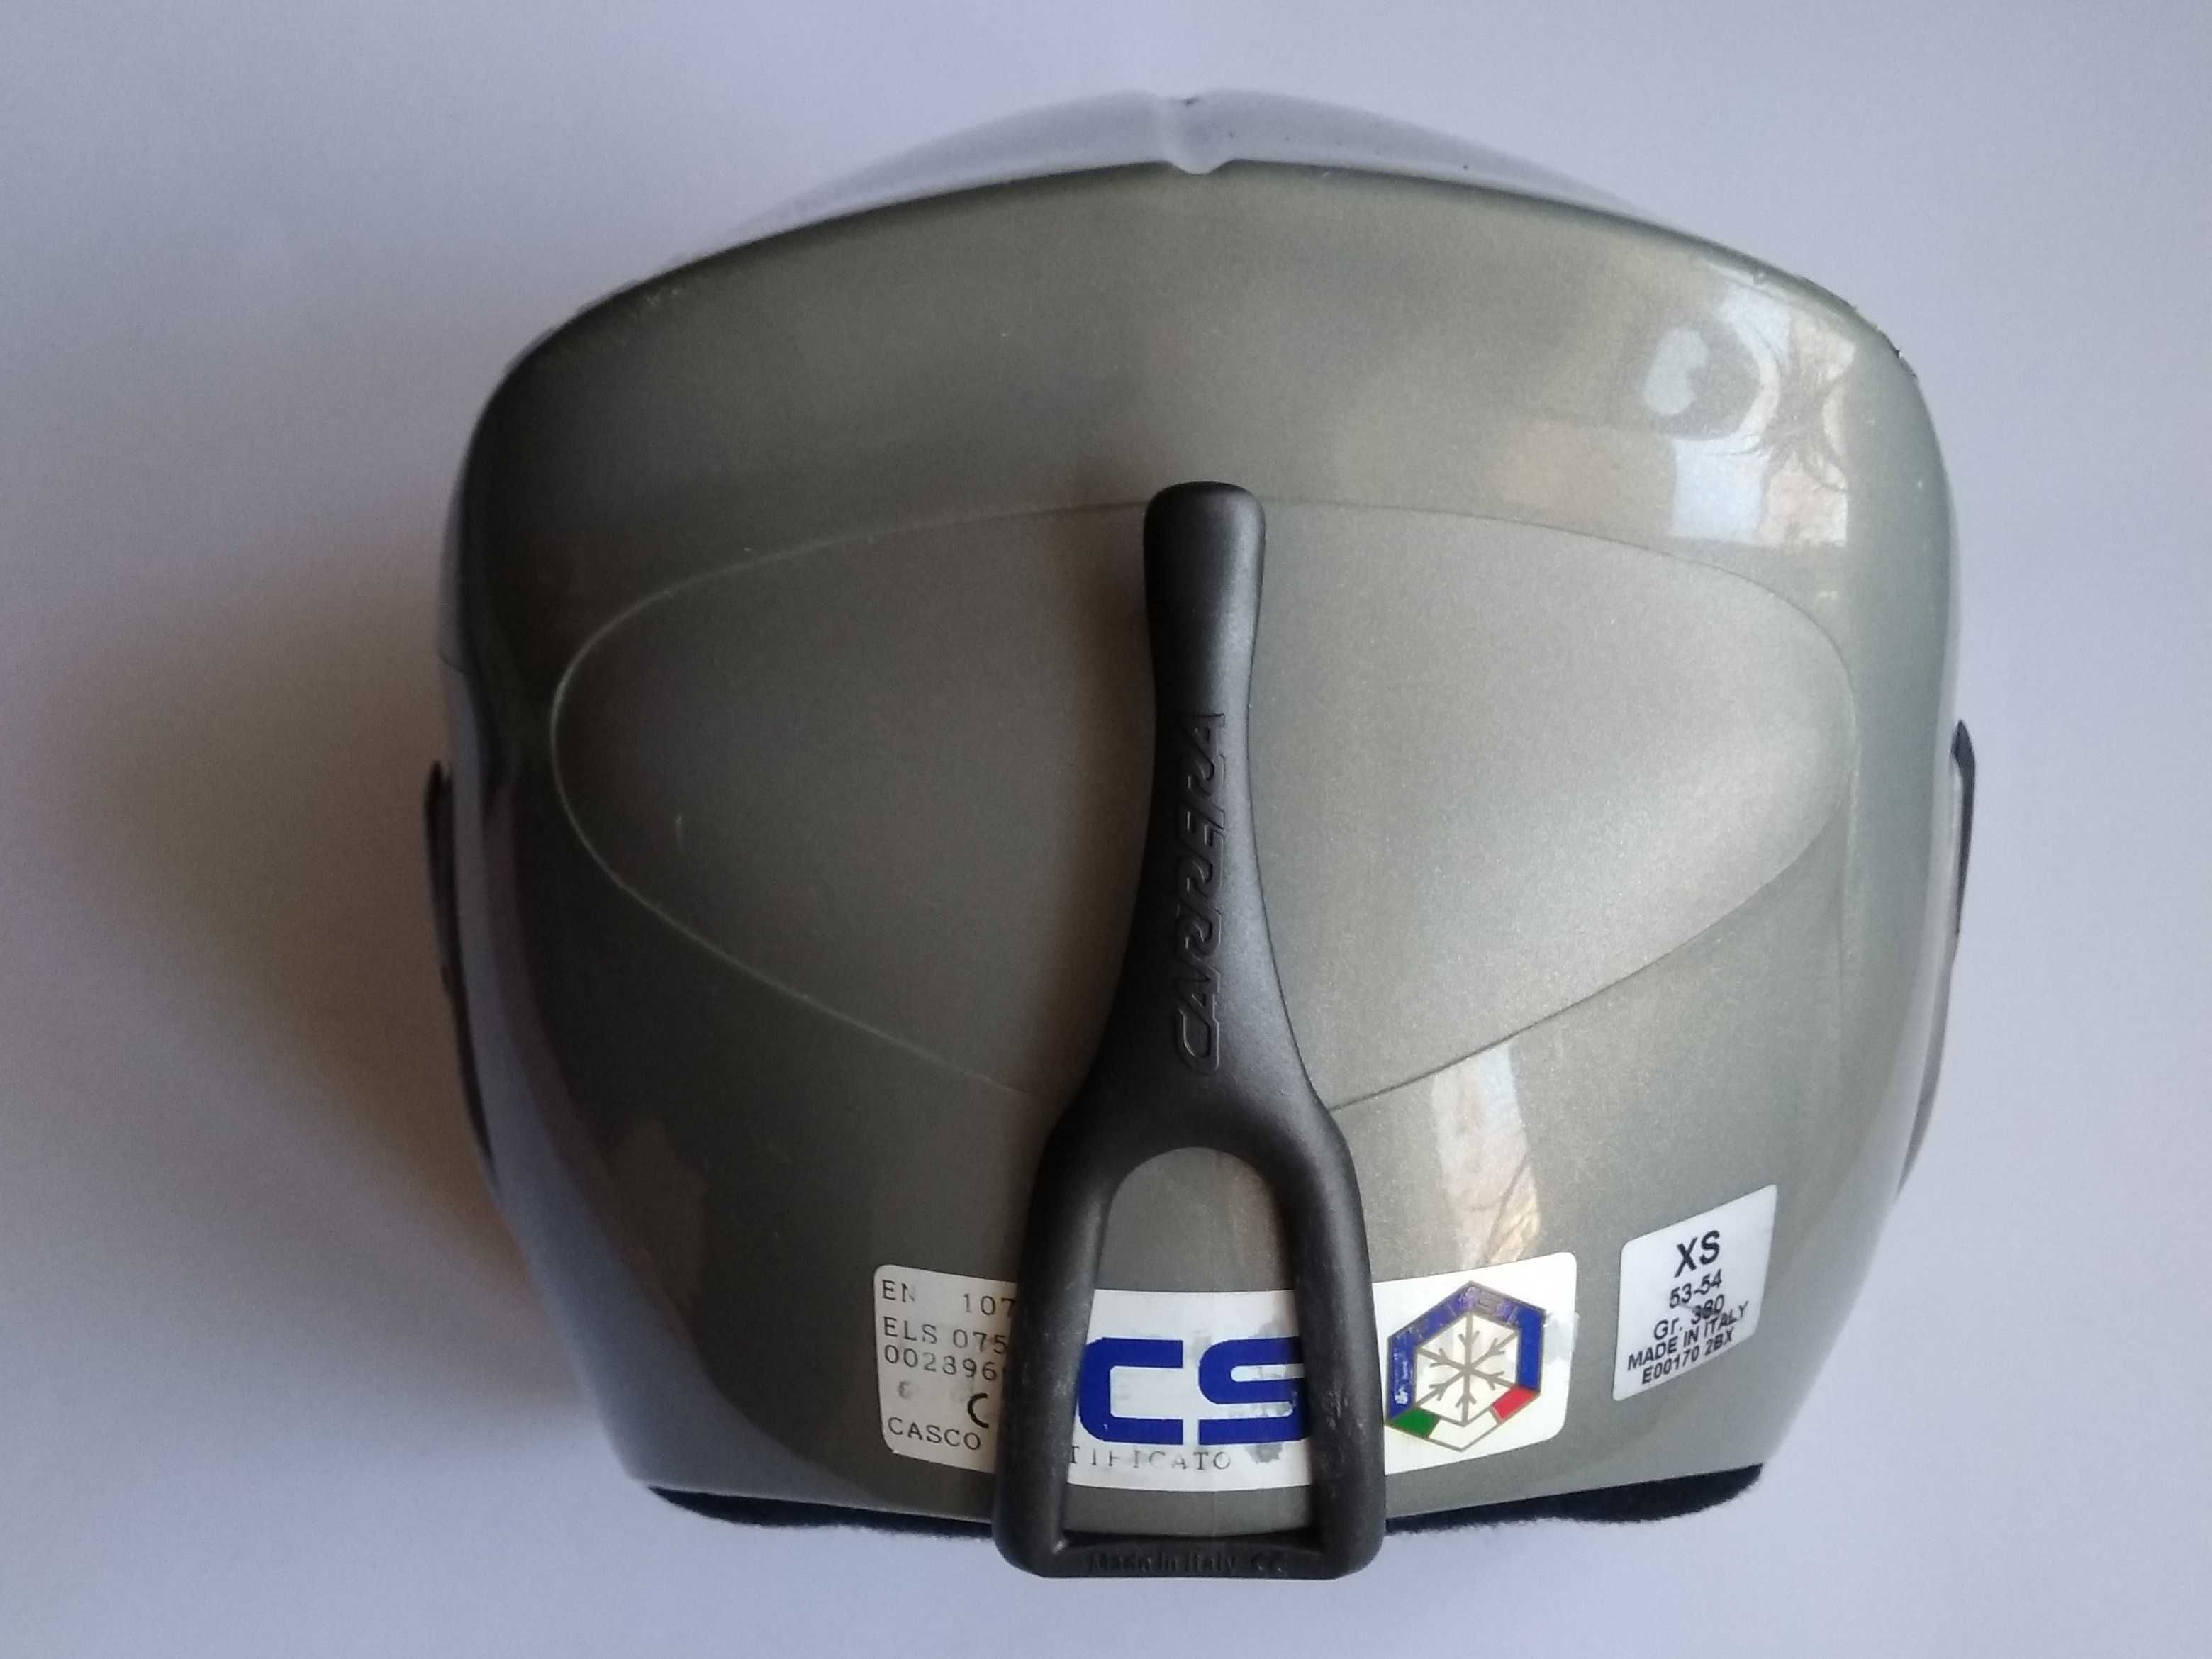 Горнолыжный шлем Carrera, размер XS 53-54см, Италия, детский